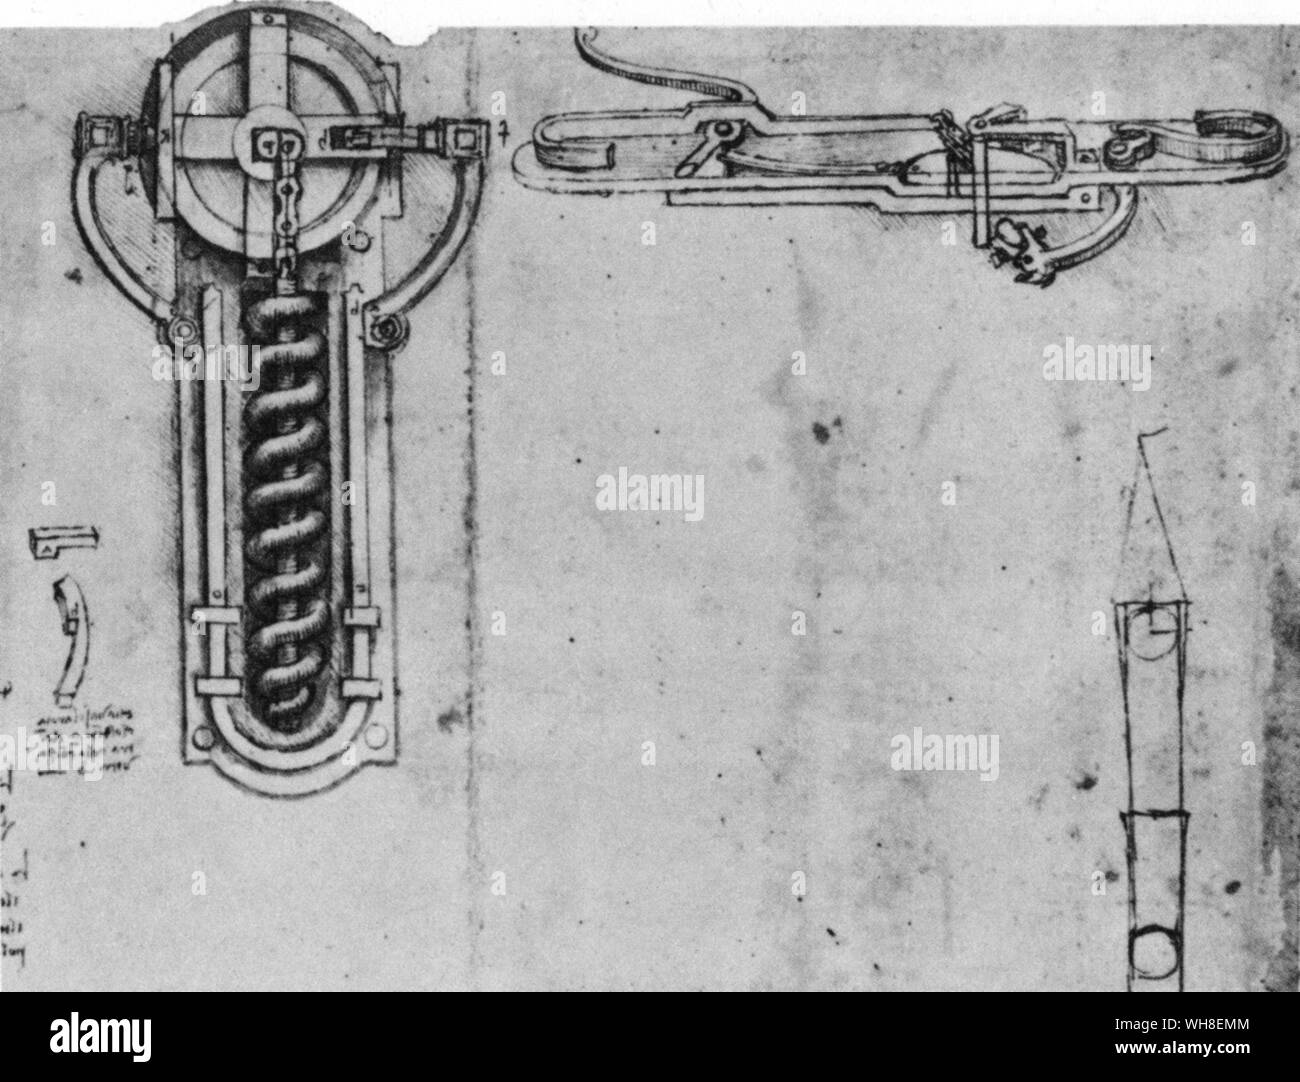 Ein Rad mit einem Schlüssel Winde eine Spiralfeder in Leonardo's Rad-Lock Mechanismus. Auf der rechten Seite ist ein feuerstein - sperren. Wenn die Feder freigegeben wird, wird die Feuerstein schlägt eine Metallstange, ein Funke. Leonardo da Vinci (1452-1519) war ein italienischer Renaissance Architekt, Musiker, Anatom, Erfinder, Ingenieur, Bildhauer, Geometer und Künstler. . . Stockfoto